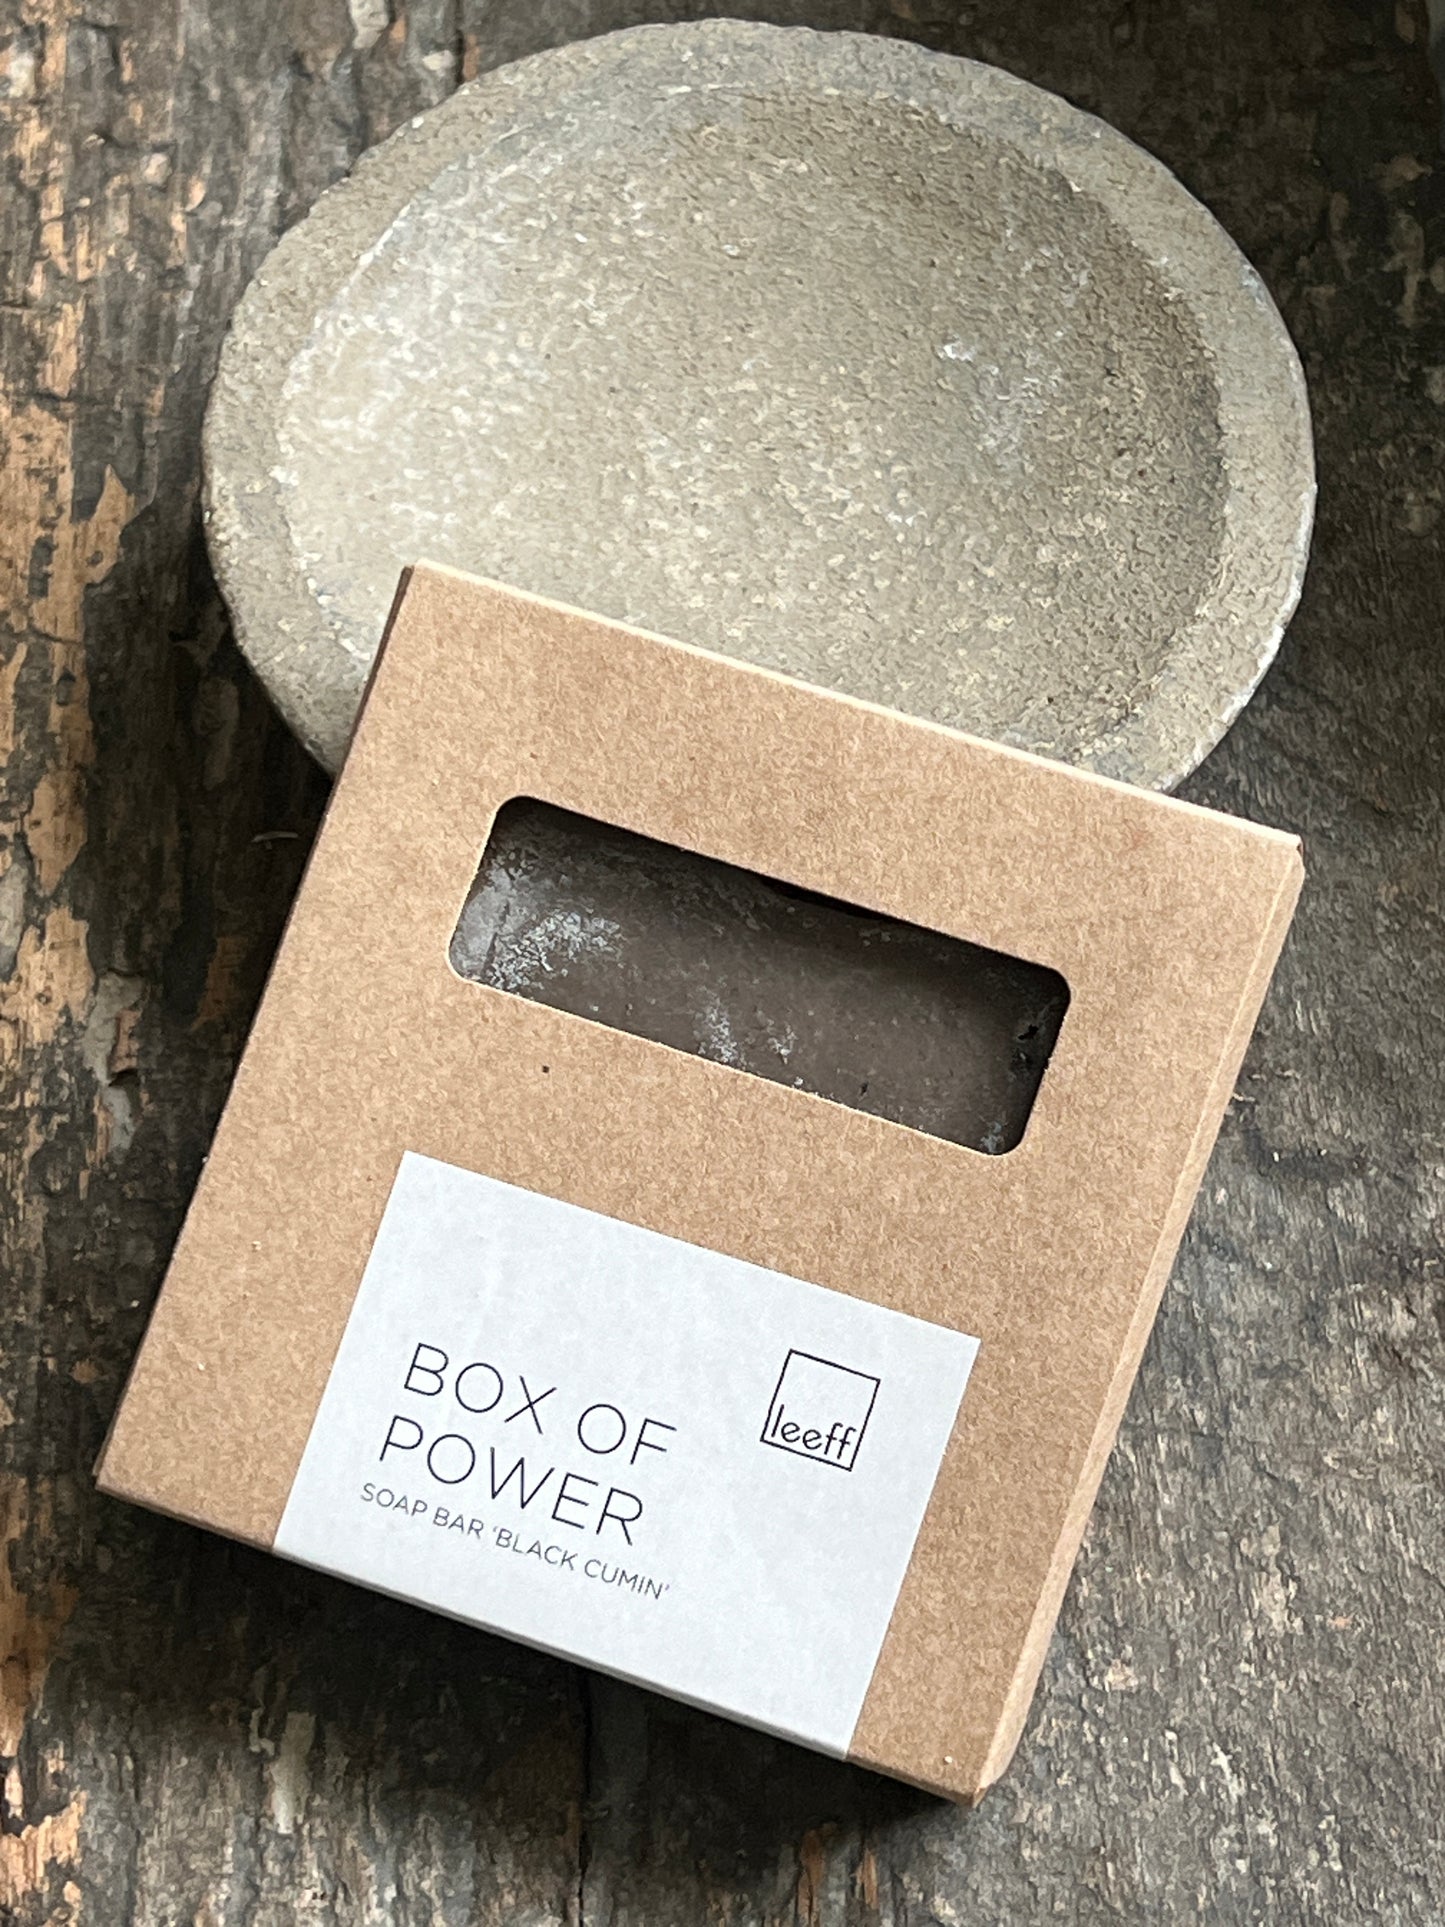 Soap bar "Black Cumin" Box of Power